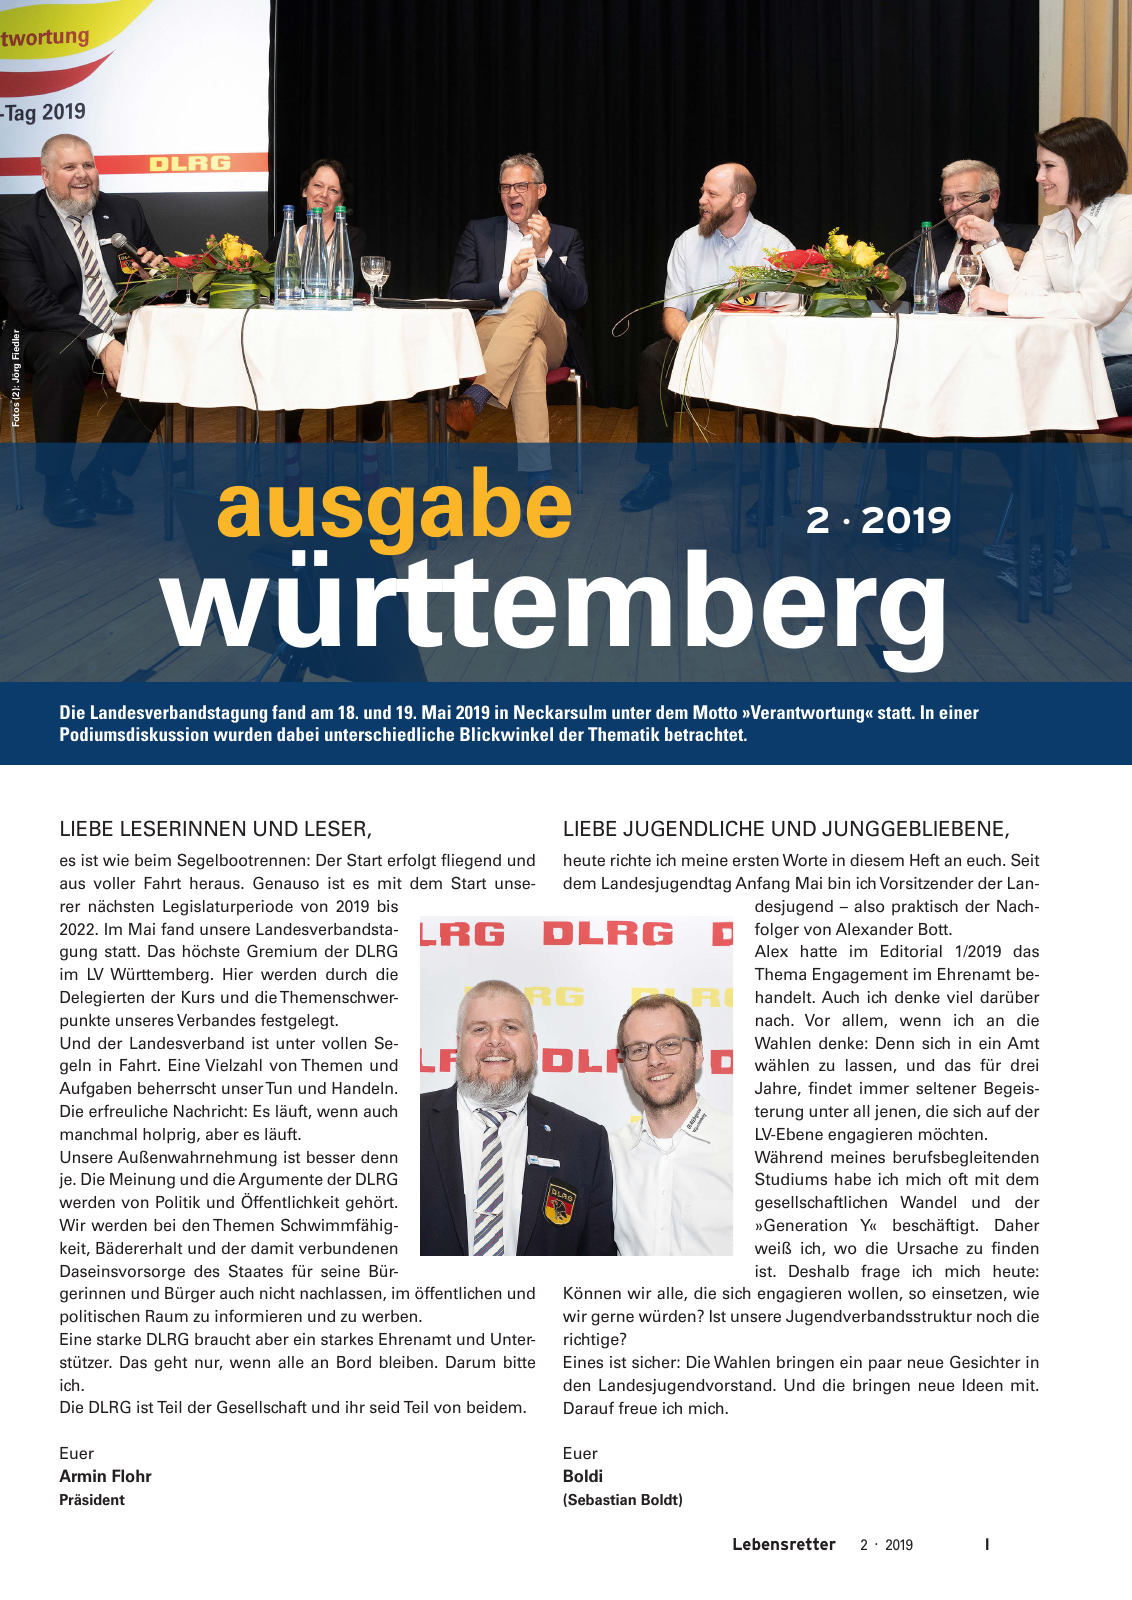 Vorschau Lebensretter 2/2019 - Württemberg Regionalausgabe Seite 3